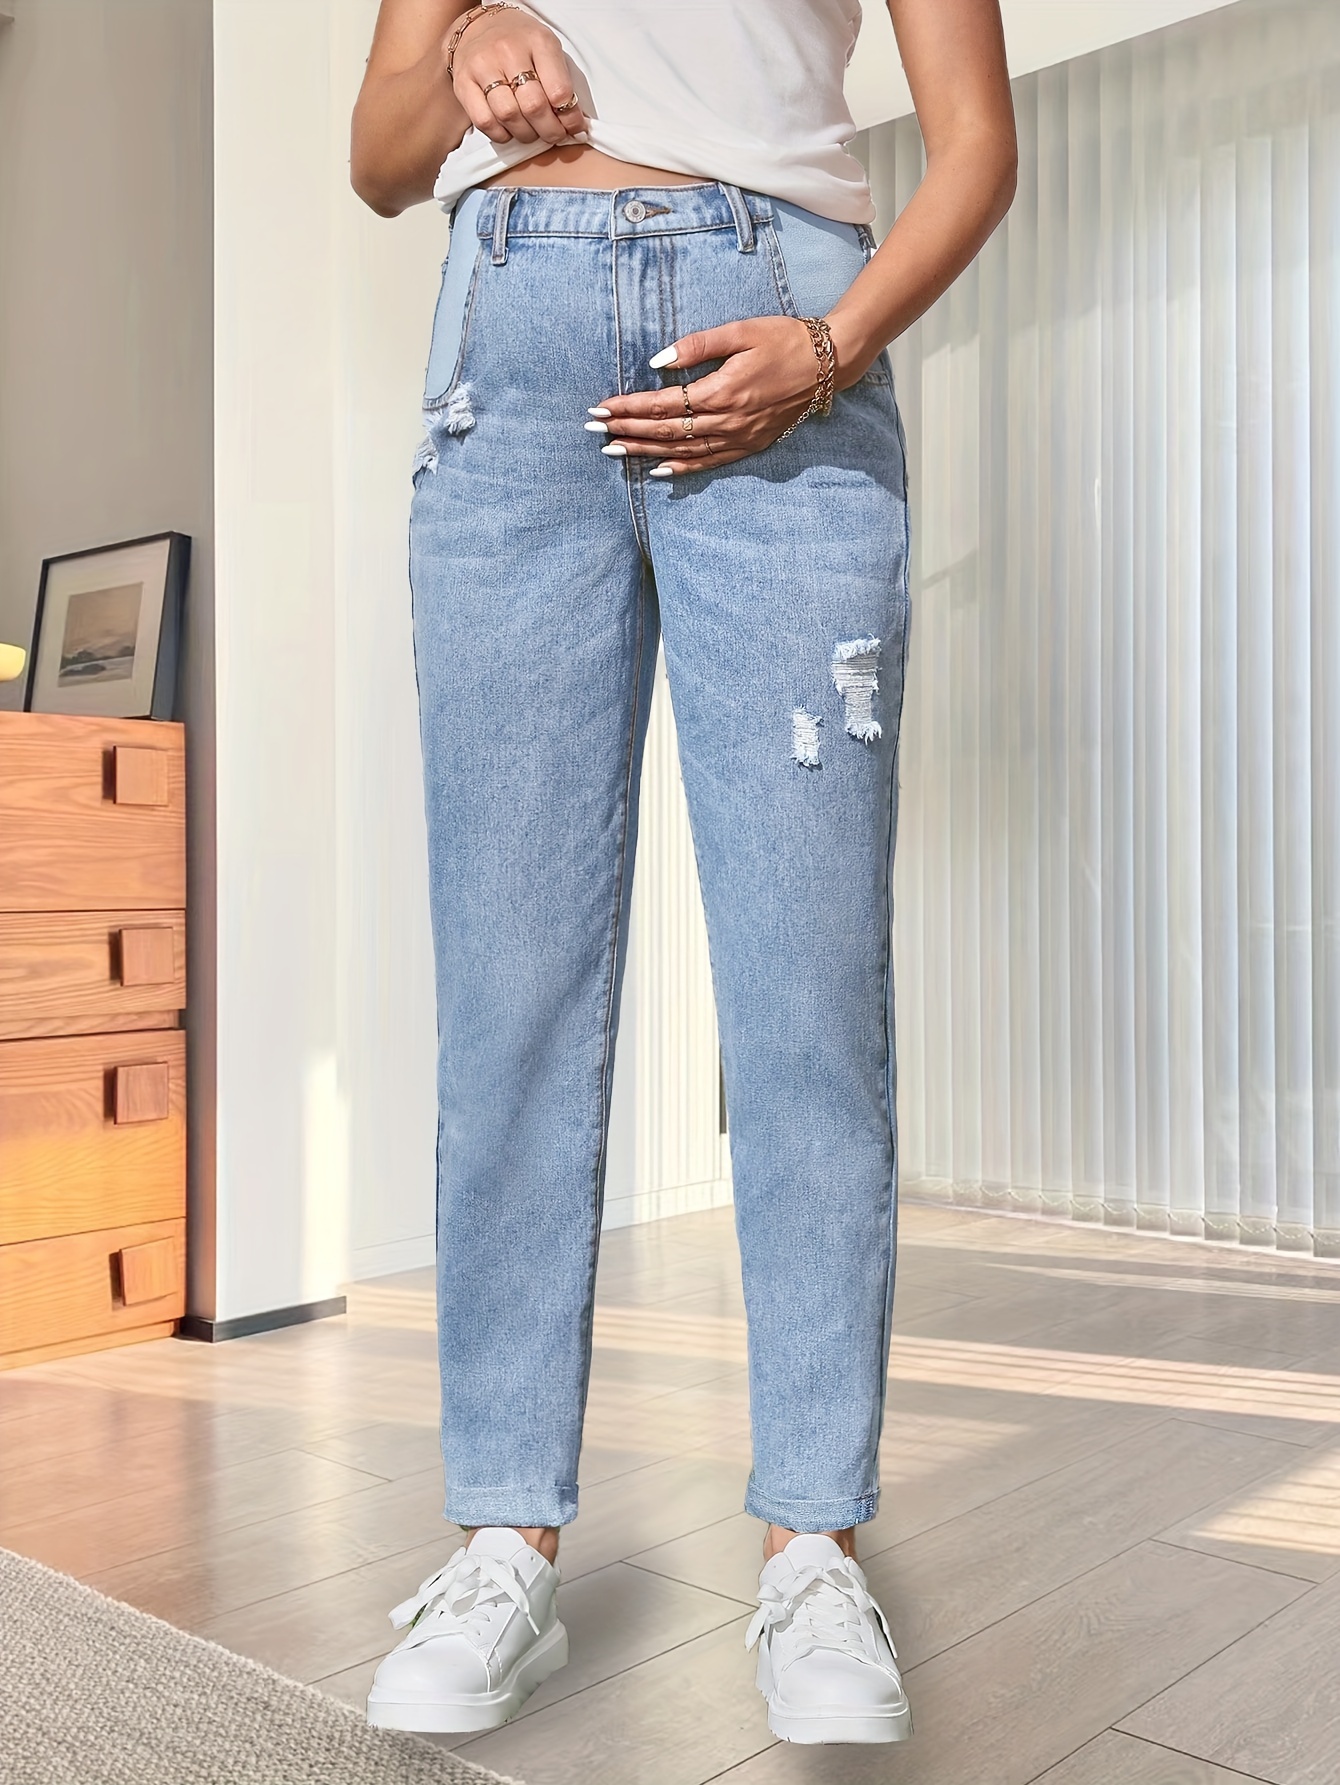 Mujeres Maternidad Jeans Rasgados Sólidos Moda Casual Pantalones De  Mezclilla, Ropa Para Mujeres Embarazadas